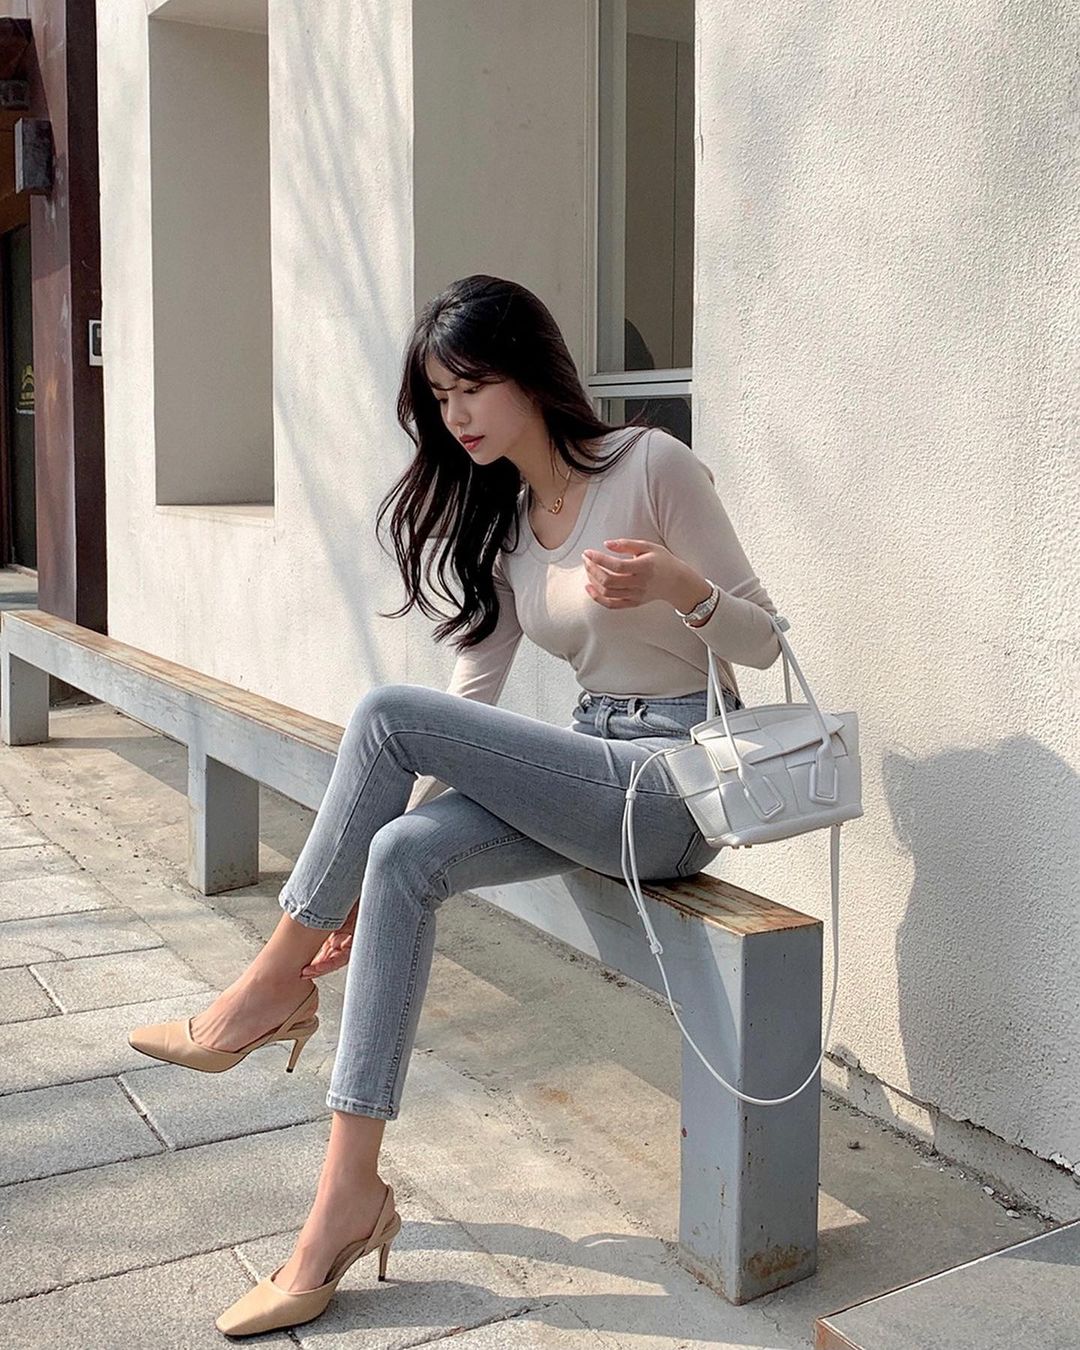 Học nàng blogger Hàn cách diện jeans “đỉnh của chóp”: Vừa hack dáng vừa thanh lịch để diện đến sở làm - Ảnh 2.